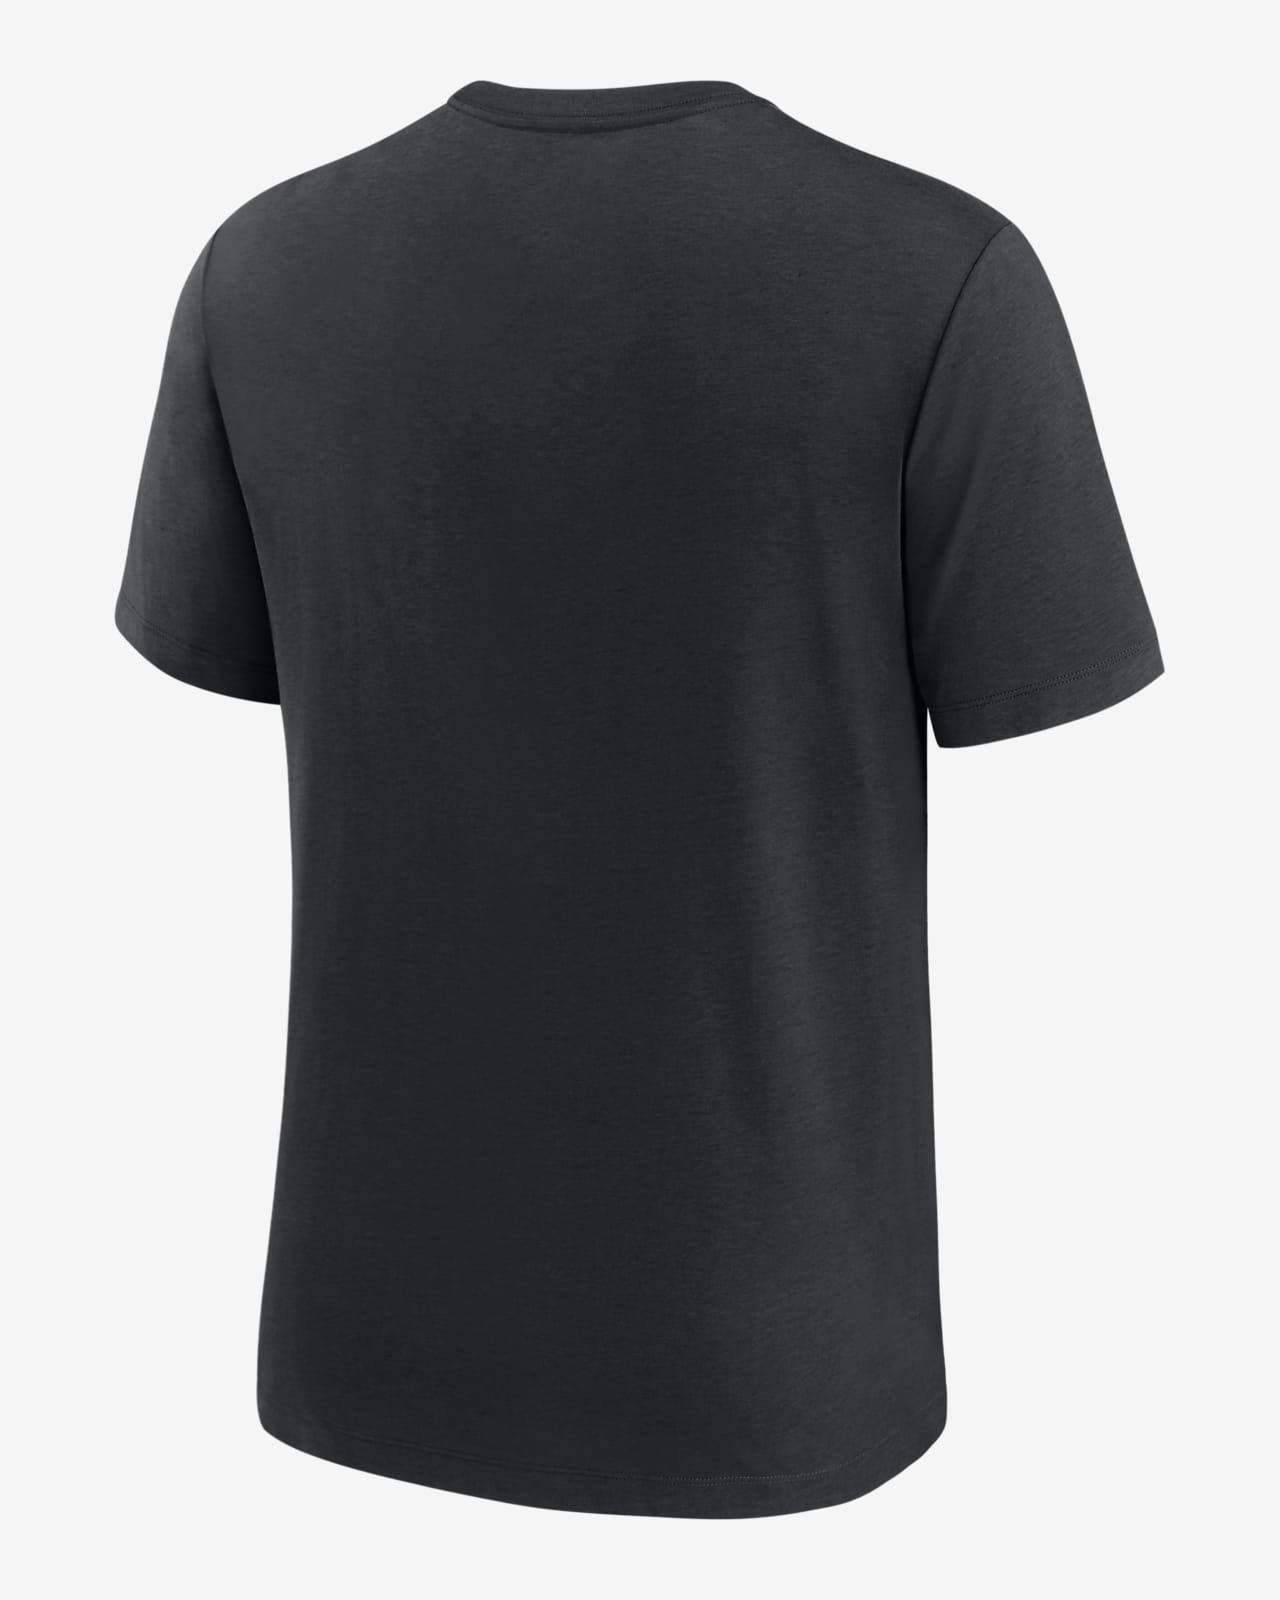 NFL Las Vegas Raiders Black Silver Big Logo T-Shirt (L-XL